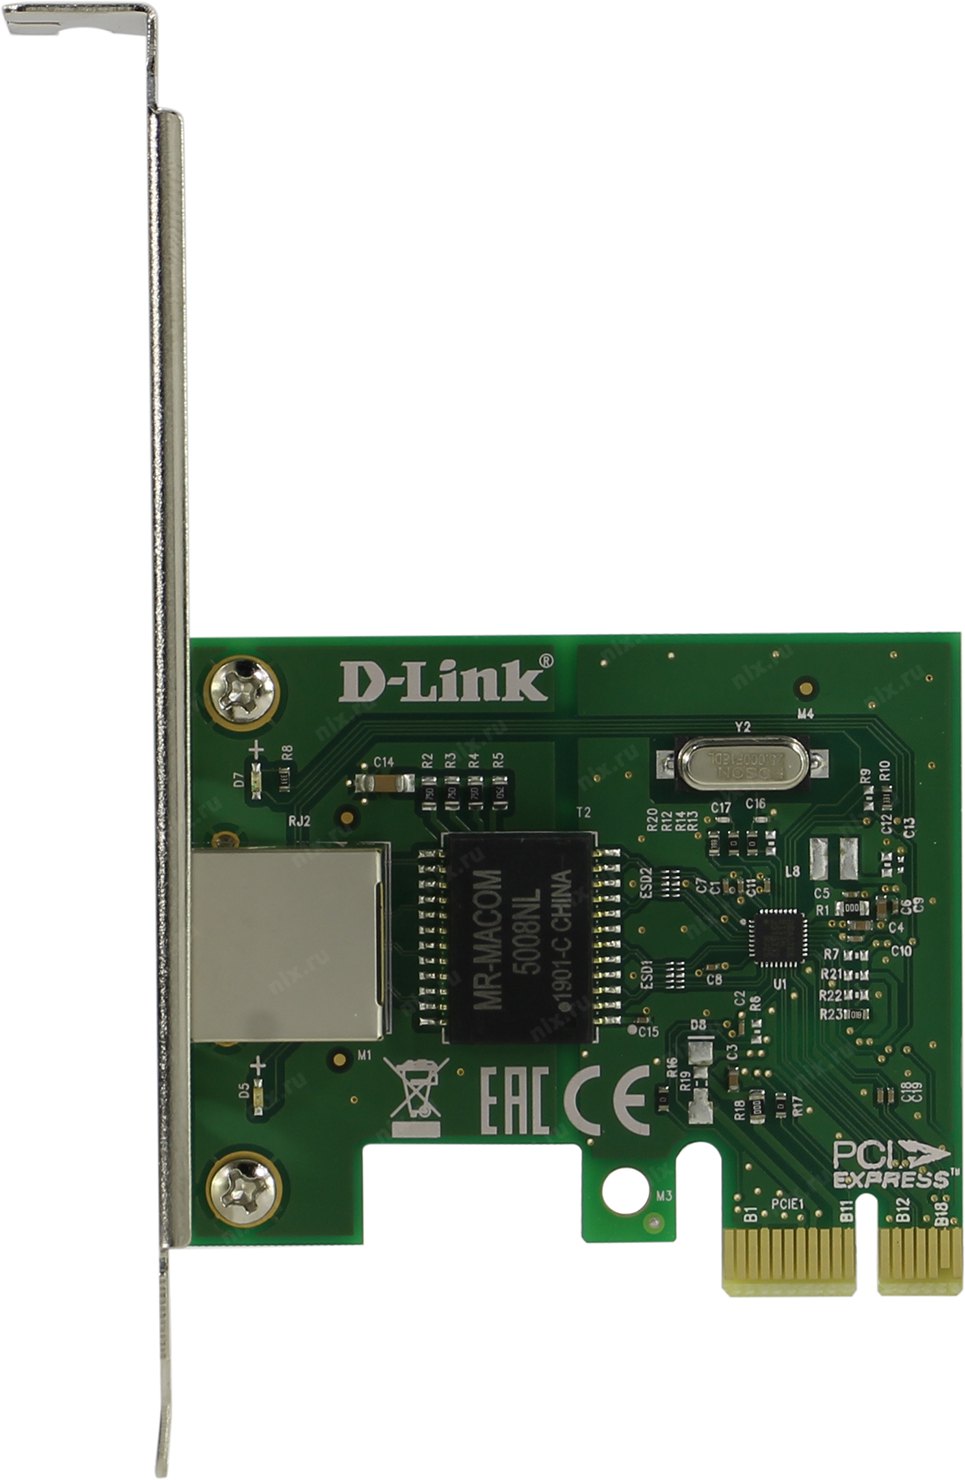 Сетевой адаптер d-link DGE-560t. Сетевой адаптер Gigabit Ethernet d-link DGE-560t PCI Express. Сетевая карта <DGE-560t>. DGE-560t. D link dge 560t